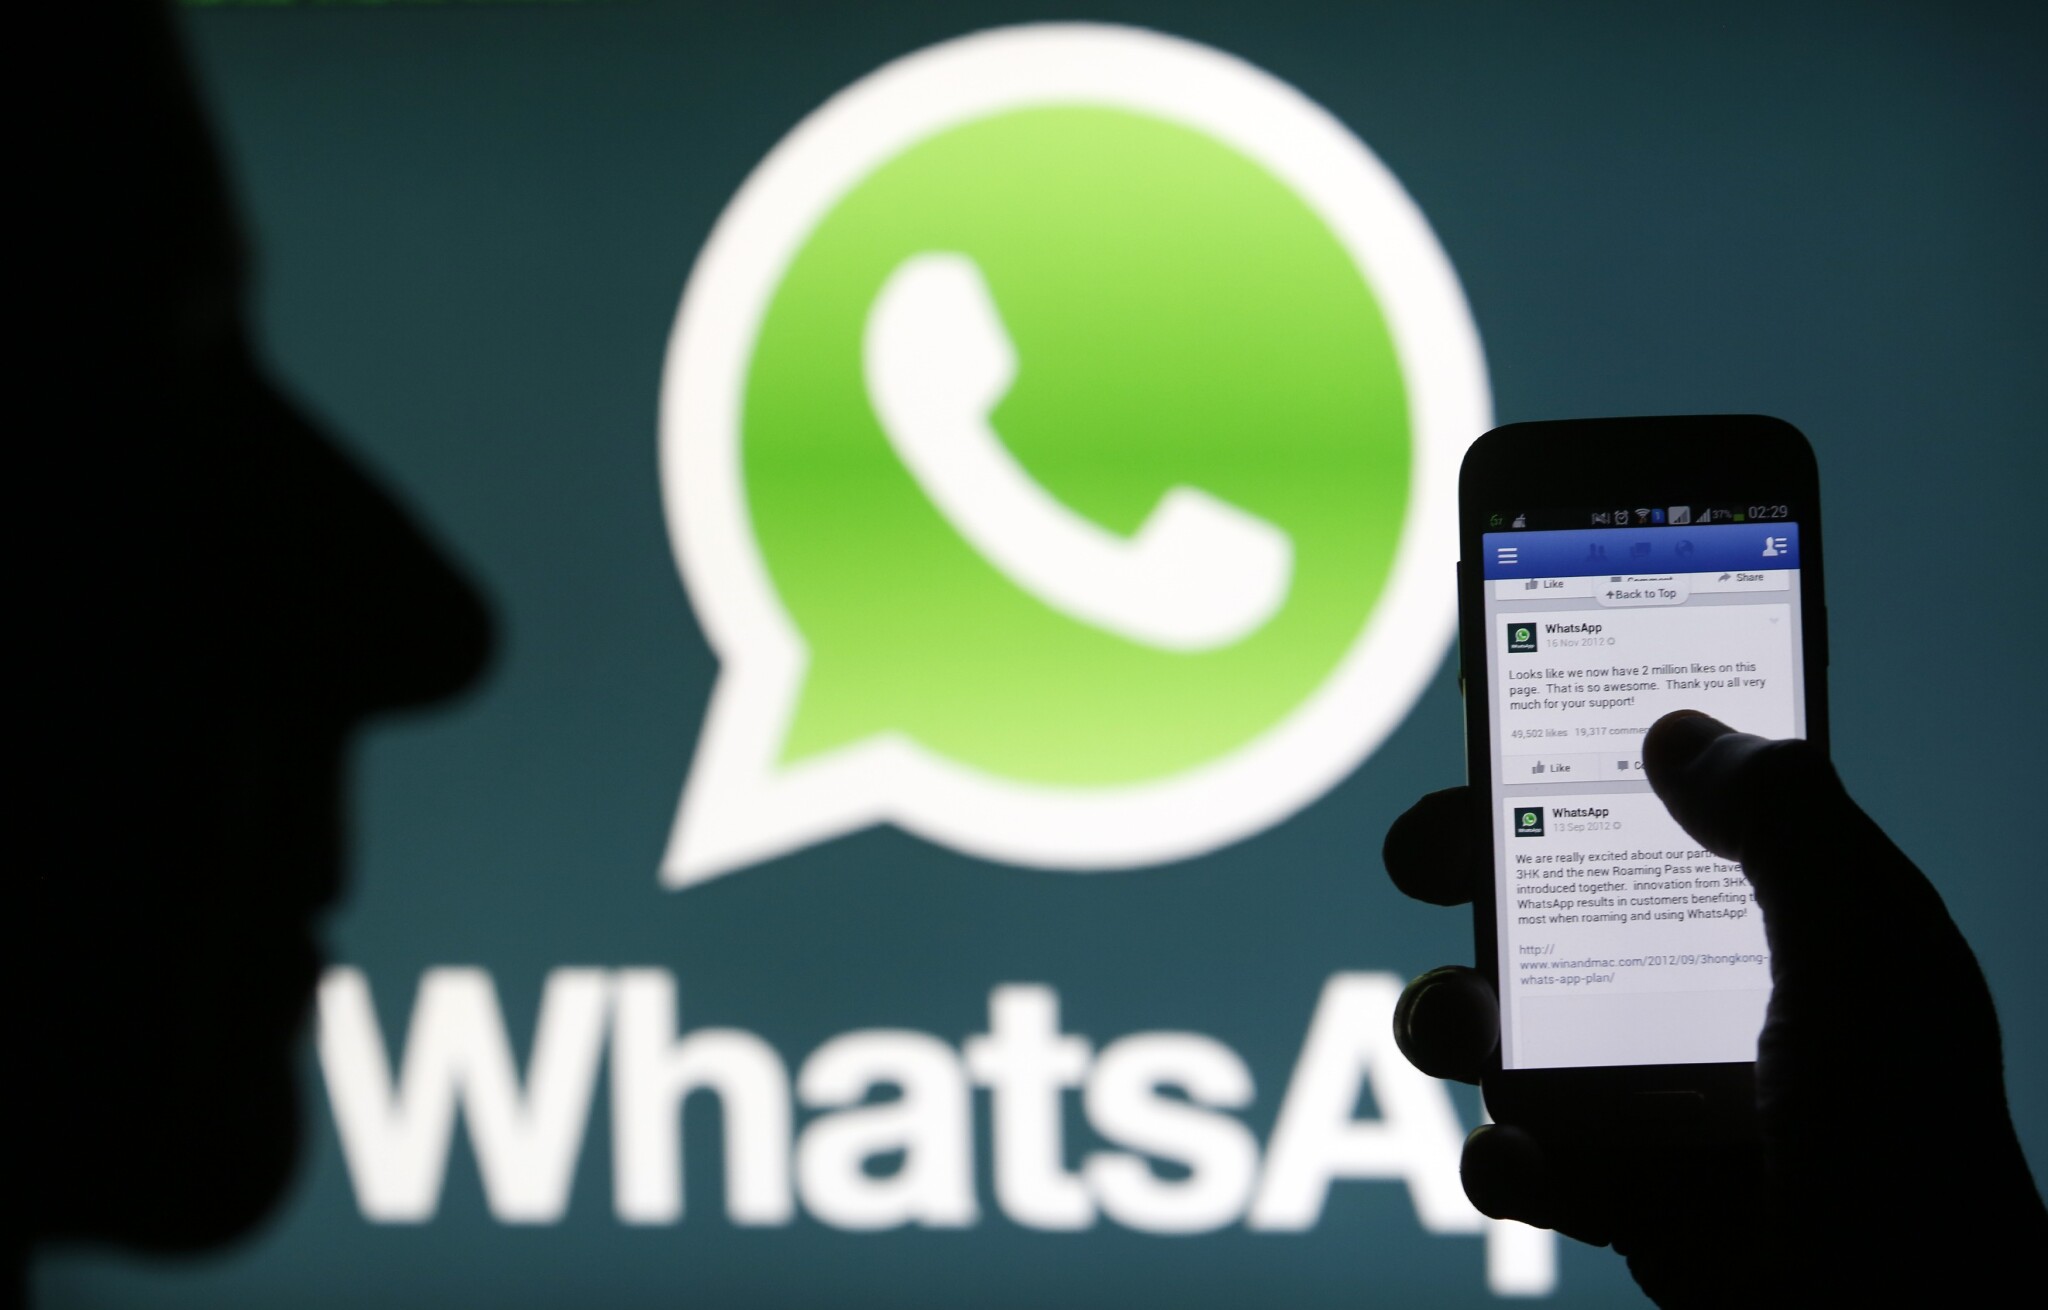 WhatsApp dostal rekordní pokutu. Porušoval soukromí uživatelů